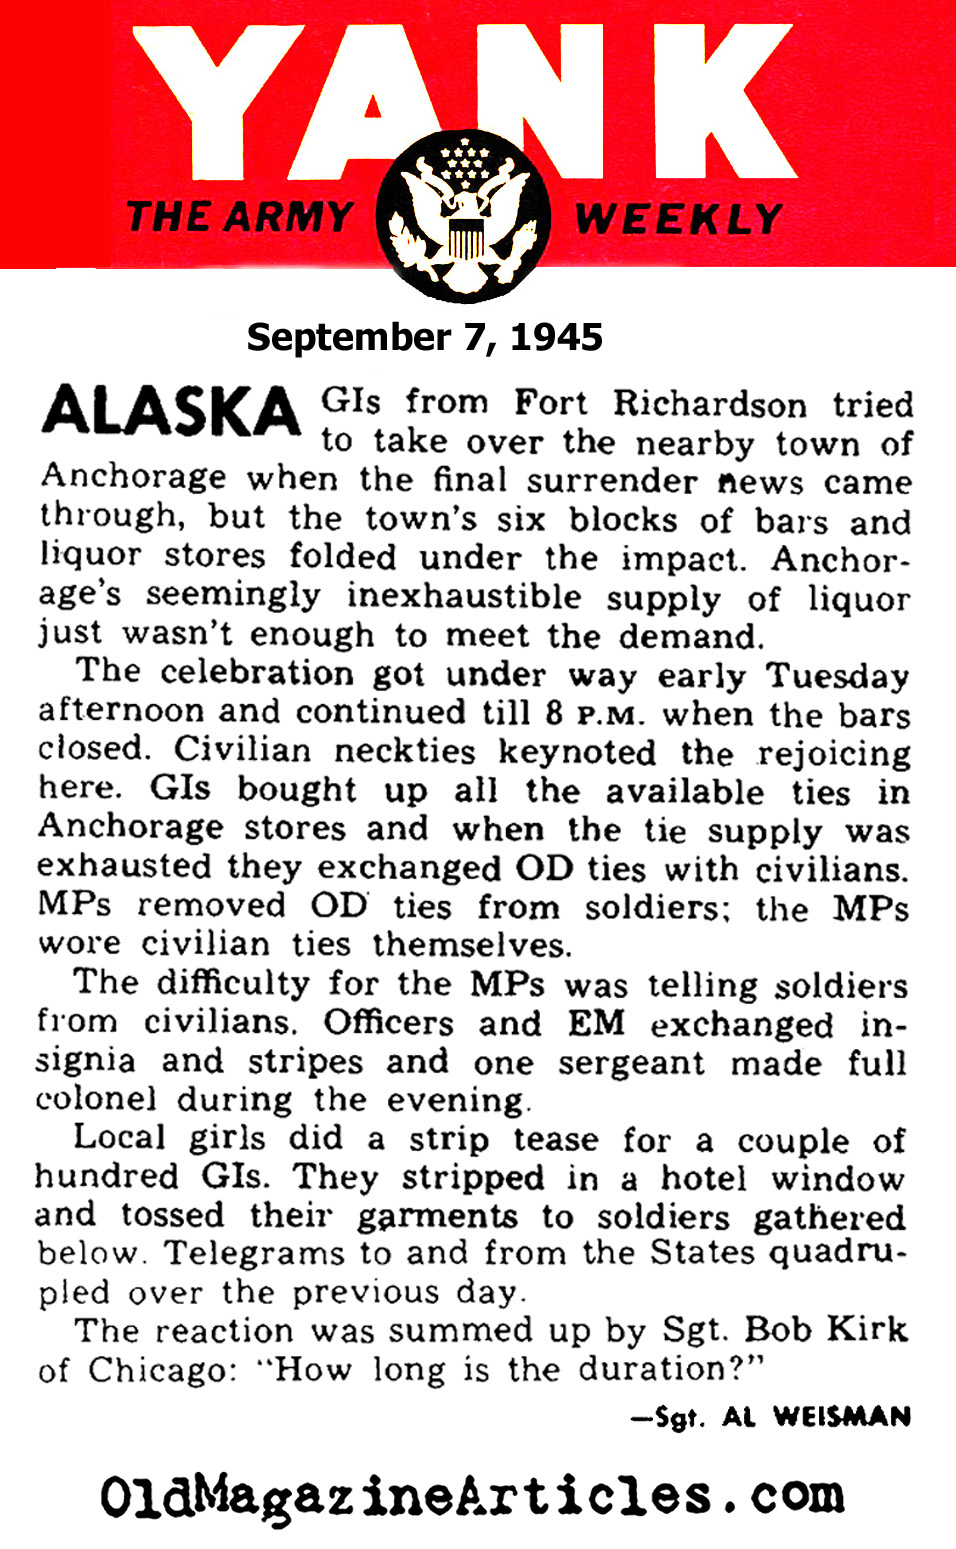 VJ Day in Alaska (Yank Magazine, 1945)